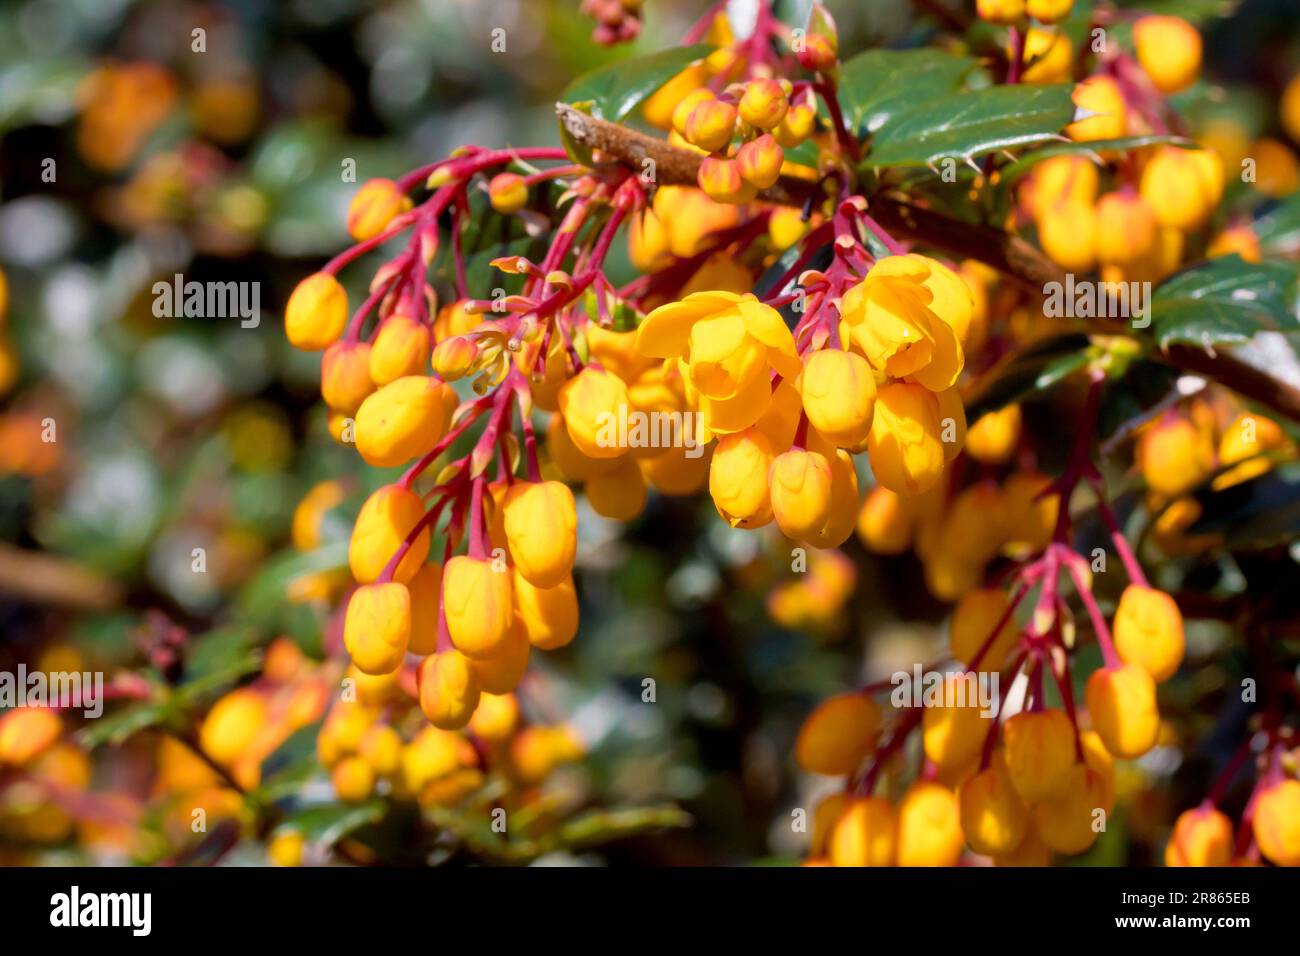 Barberry de Darwin (berberis darwinii), près des bourgeons jaune/orange et des fleurs de l'arbuste ornemental communément planté dans les jardins et les parcs. Banque D'Images